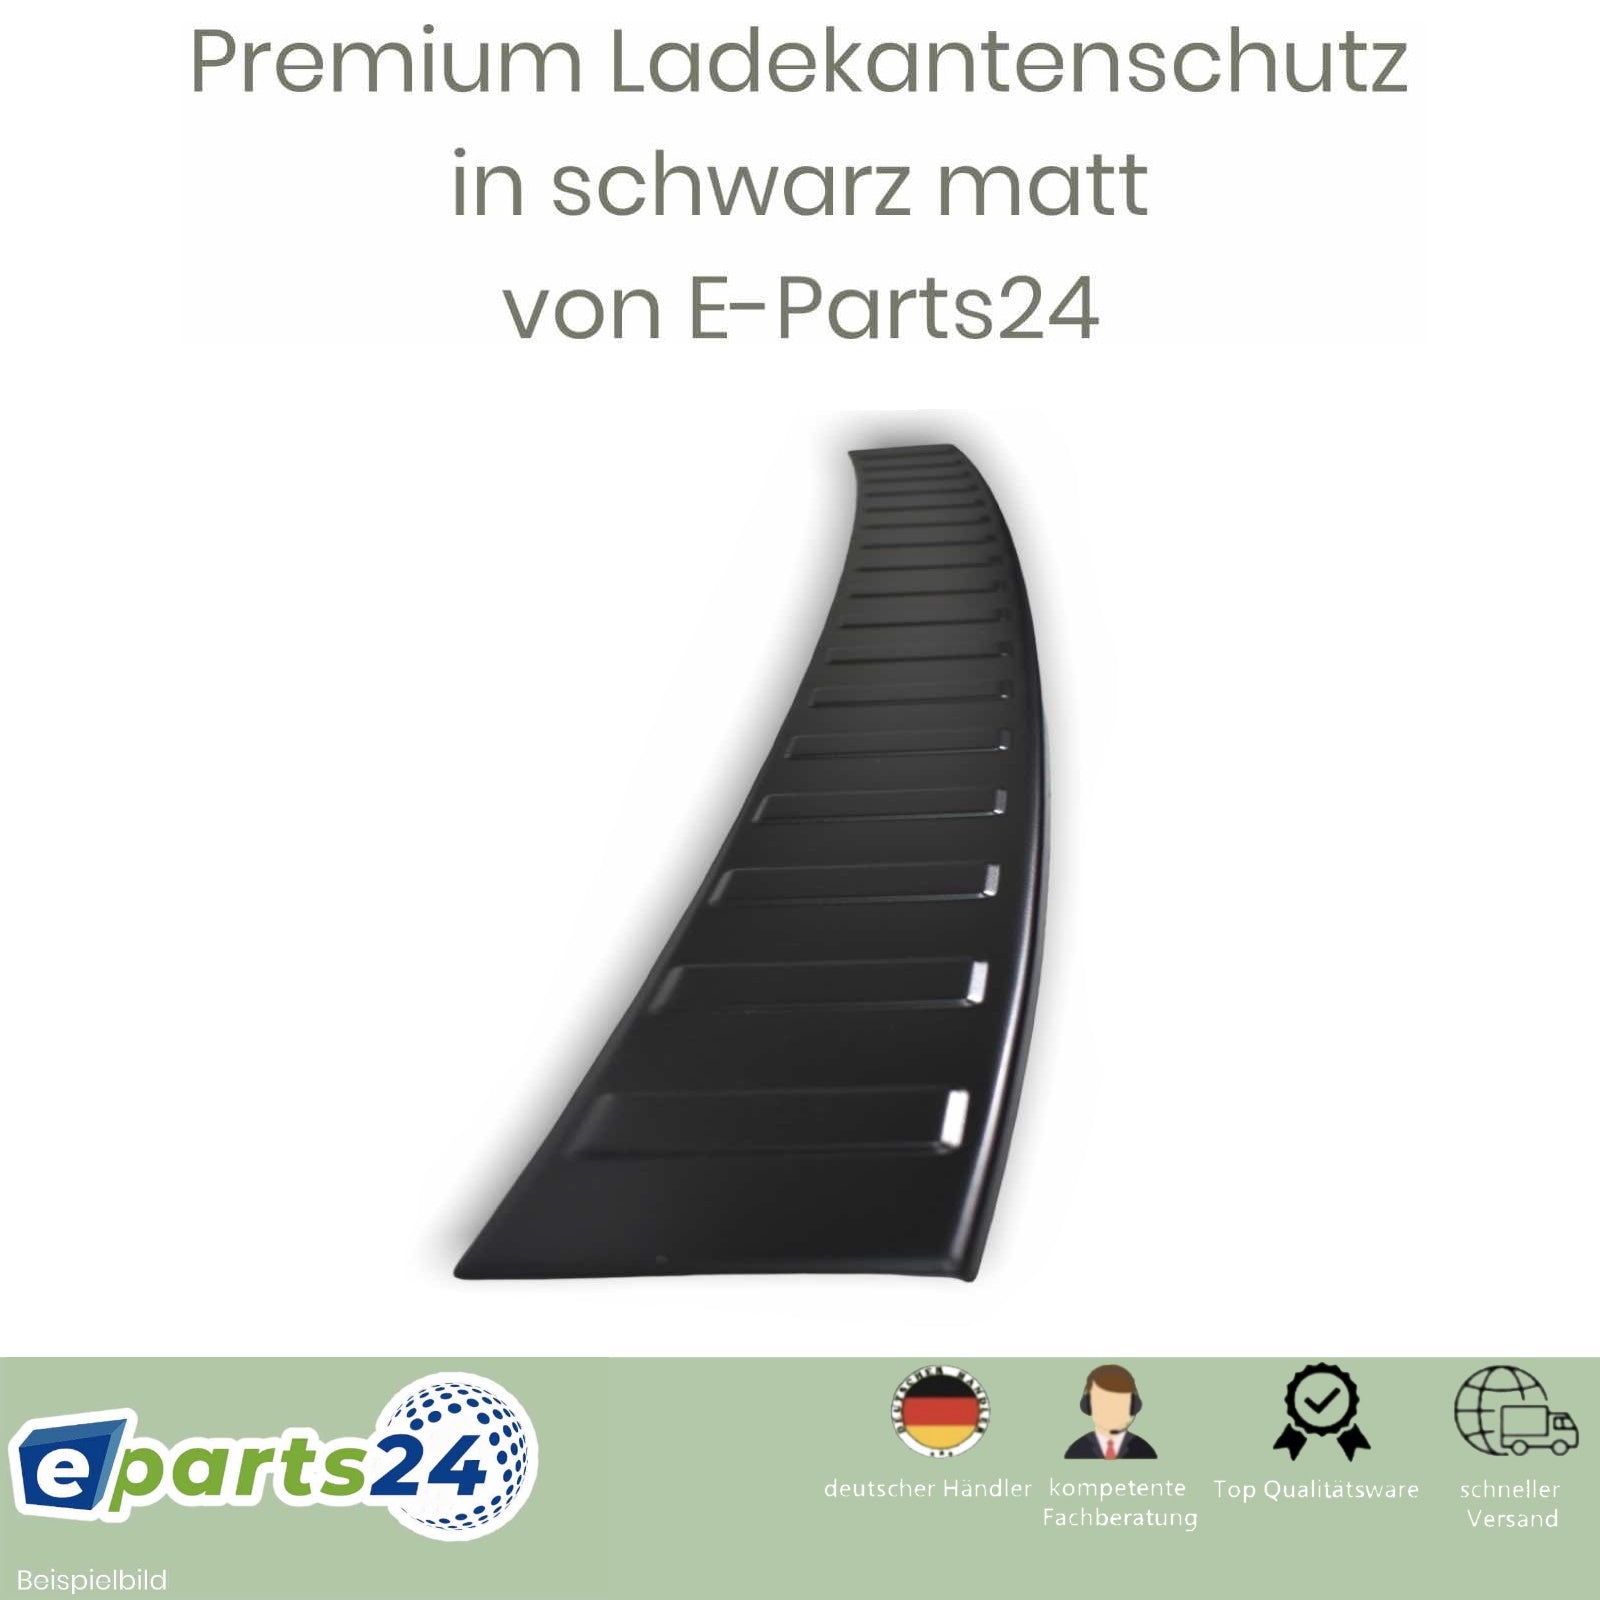 Ladekantenschutz Heckschutz für KIA Sportage sch 2021 – NQ5 ab Edelstahl E-Parts24